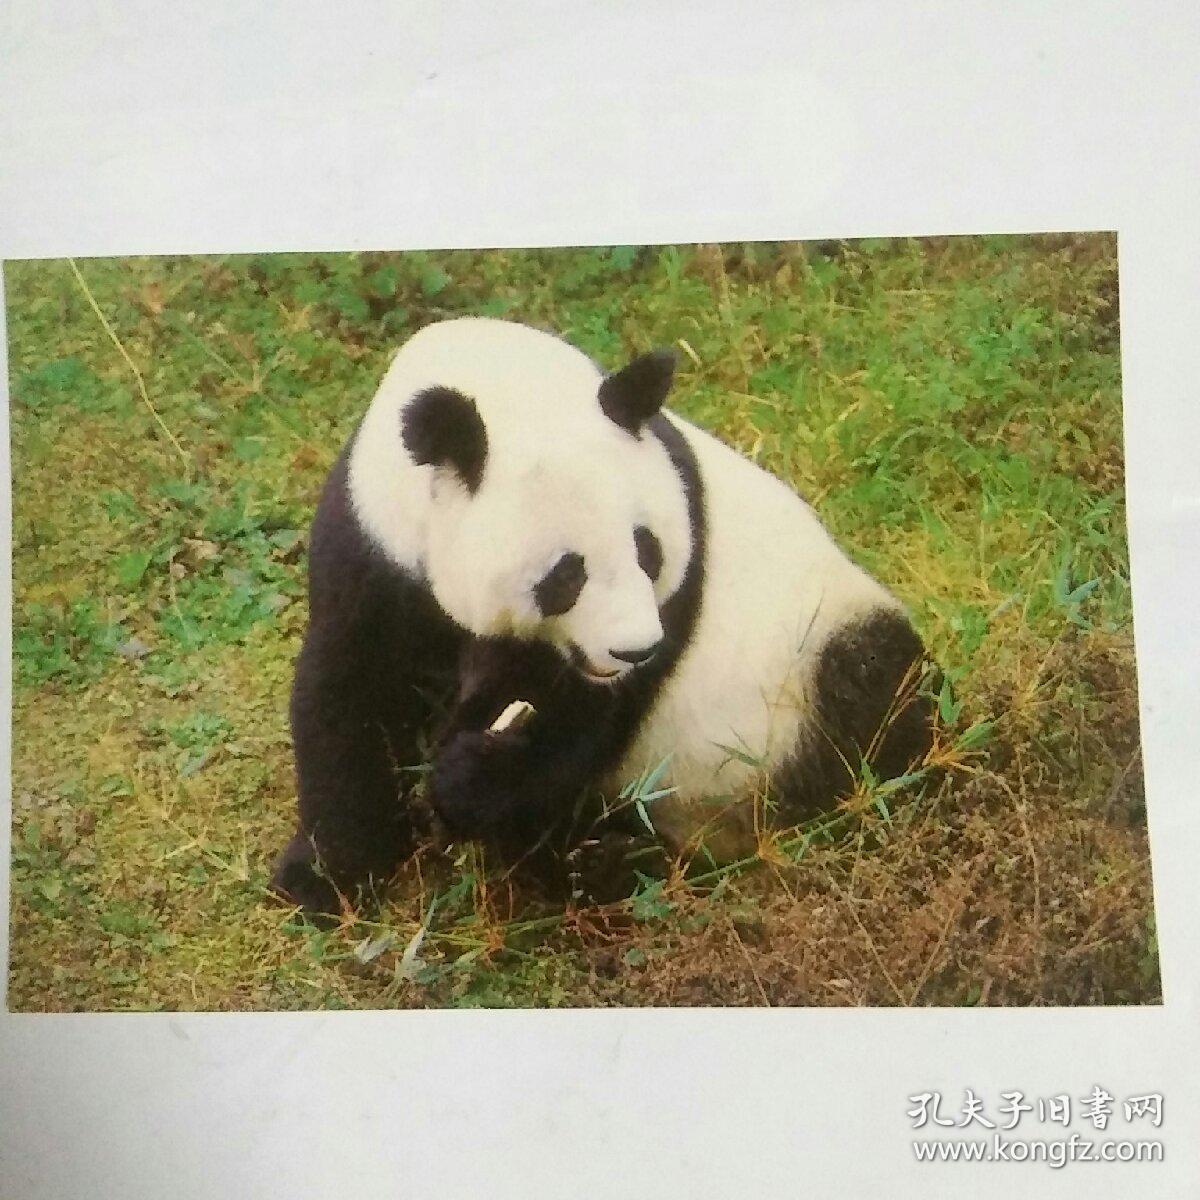 明信片――大熊猫系列之七